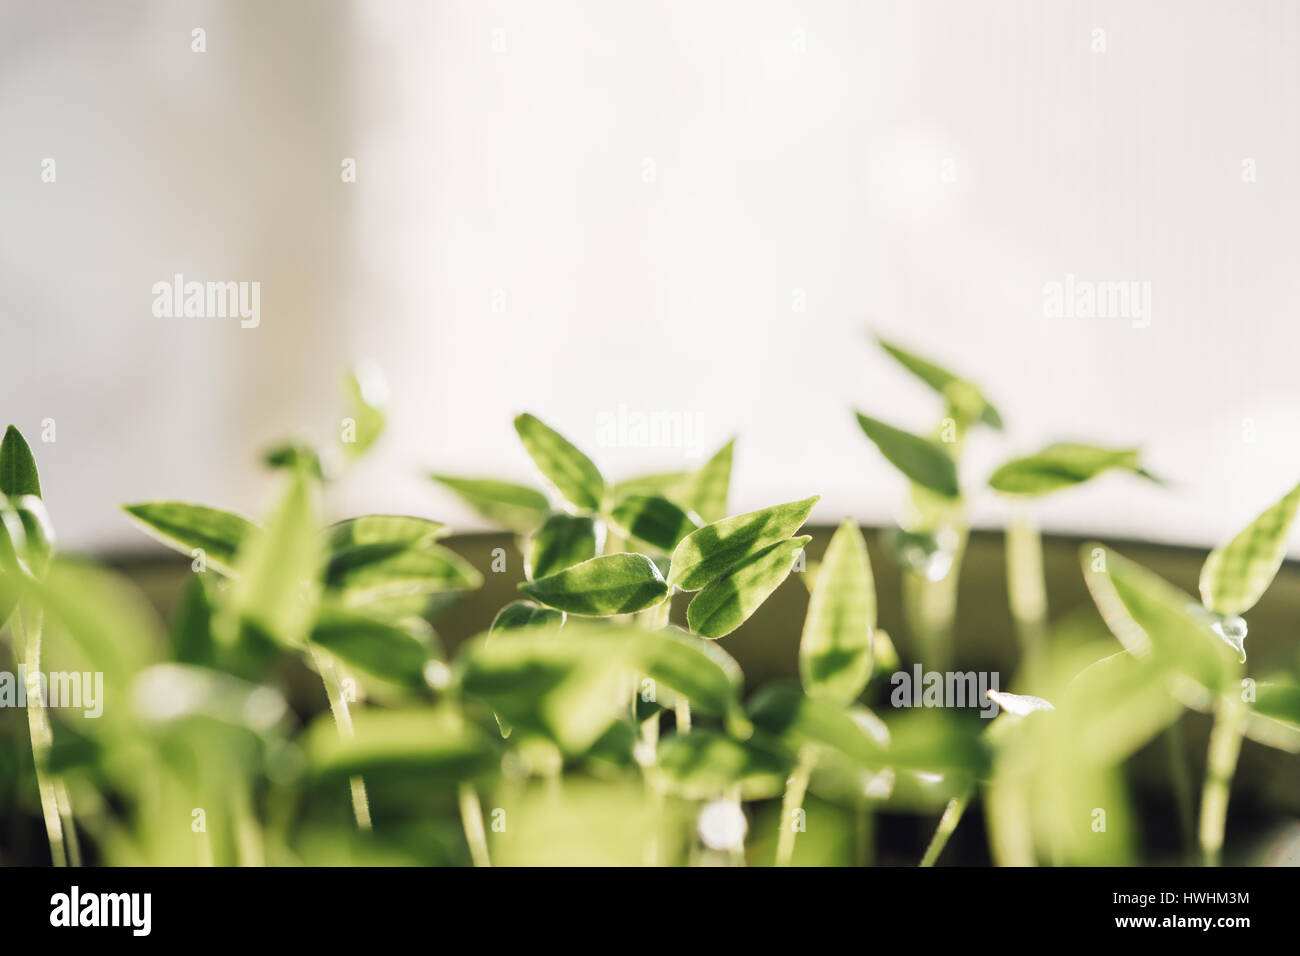 Gruppe junge Sprossen mit grünen Blatt oder Blätter aus dem Boden wachsen. Frühling-Konzept des neuen Lebens. Beginn der Vegetationsperiode. Anfang Frühling Agricultura Stockfoto